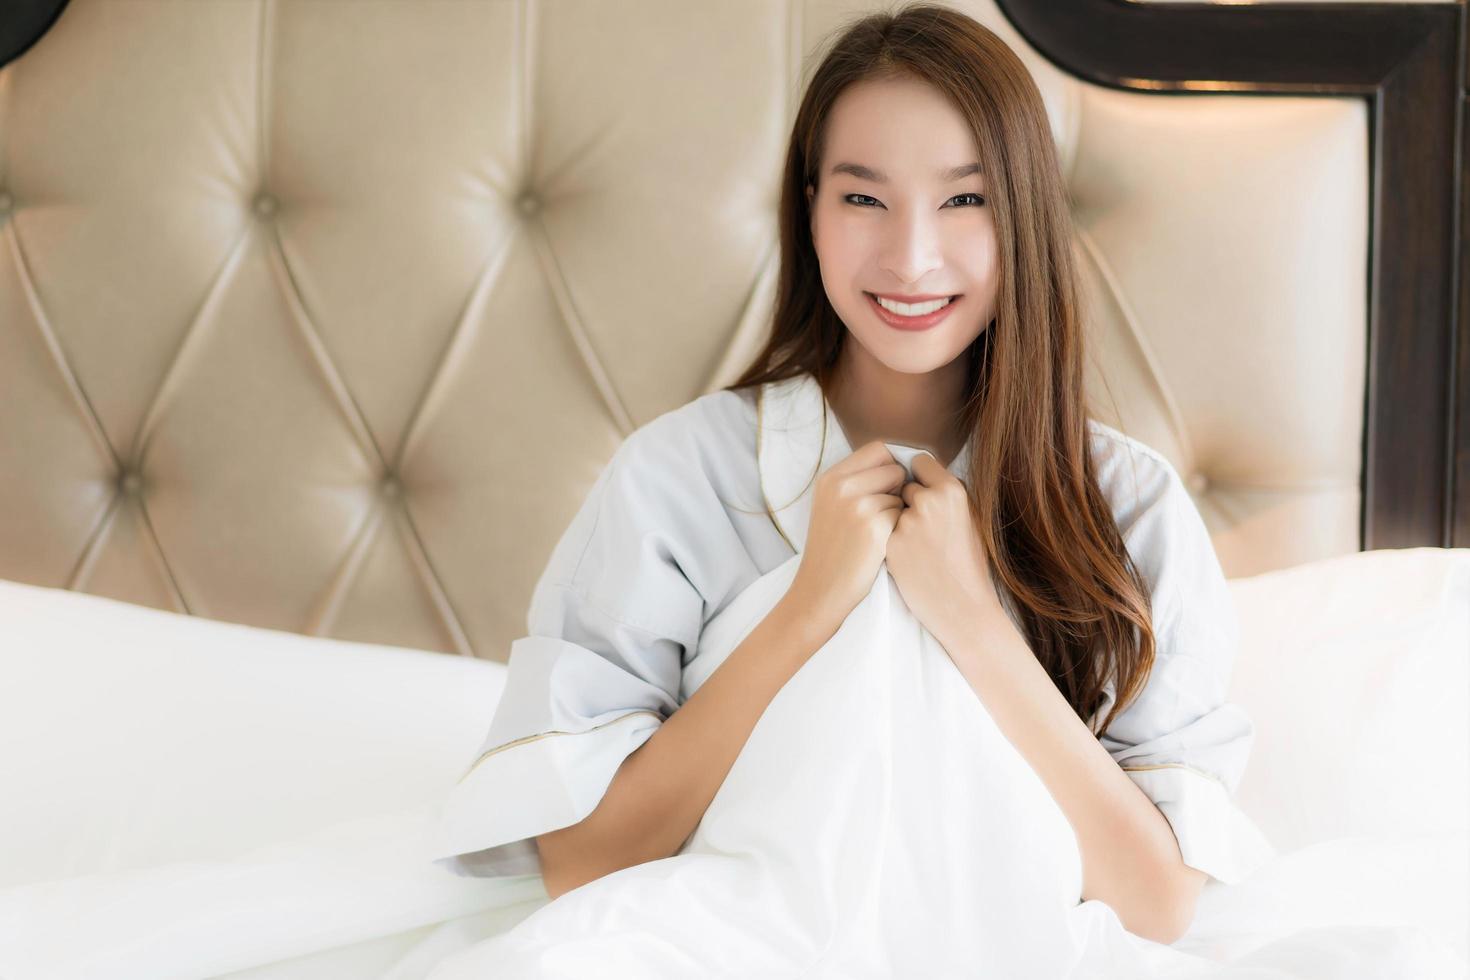 Porträt schöne junge asiatische Frau wacht glücklich auf und lächelt auf dem Bett im Schlafzimmerinnenraum foto